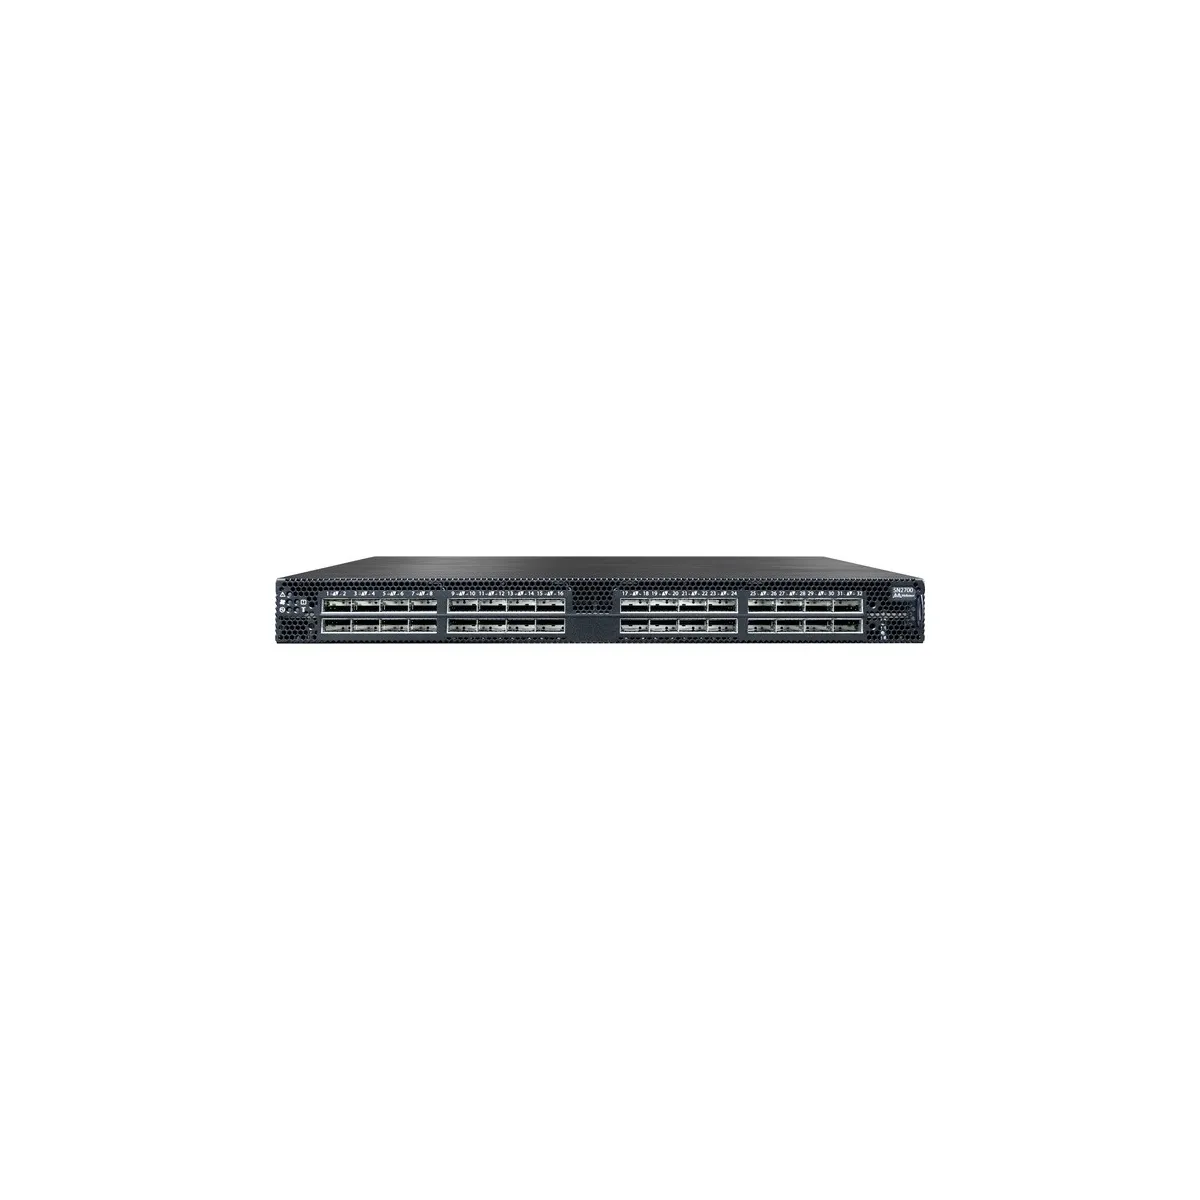 Mellanox SN2700 ONIE 32-Port QSFP28 100GbE Managed Switch 550W w/Rails